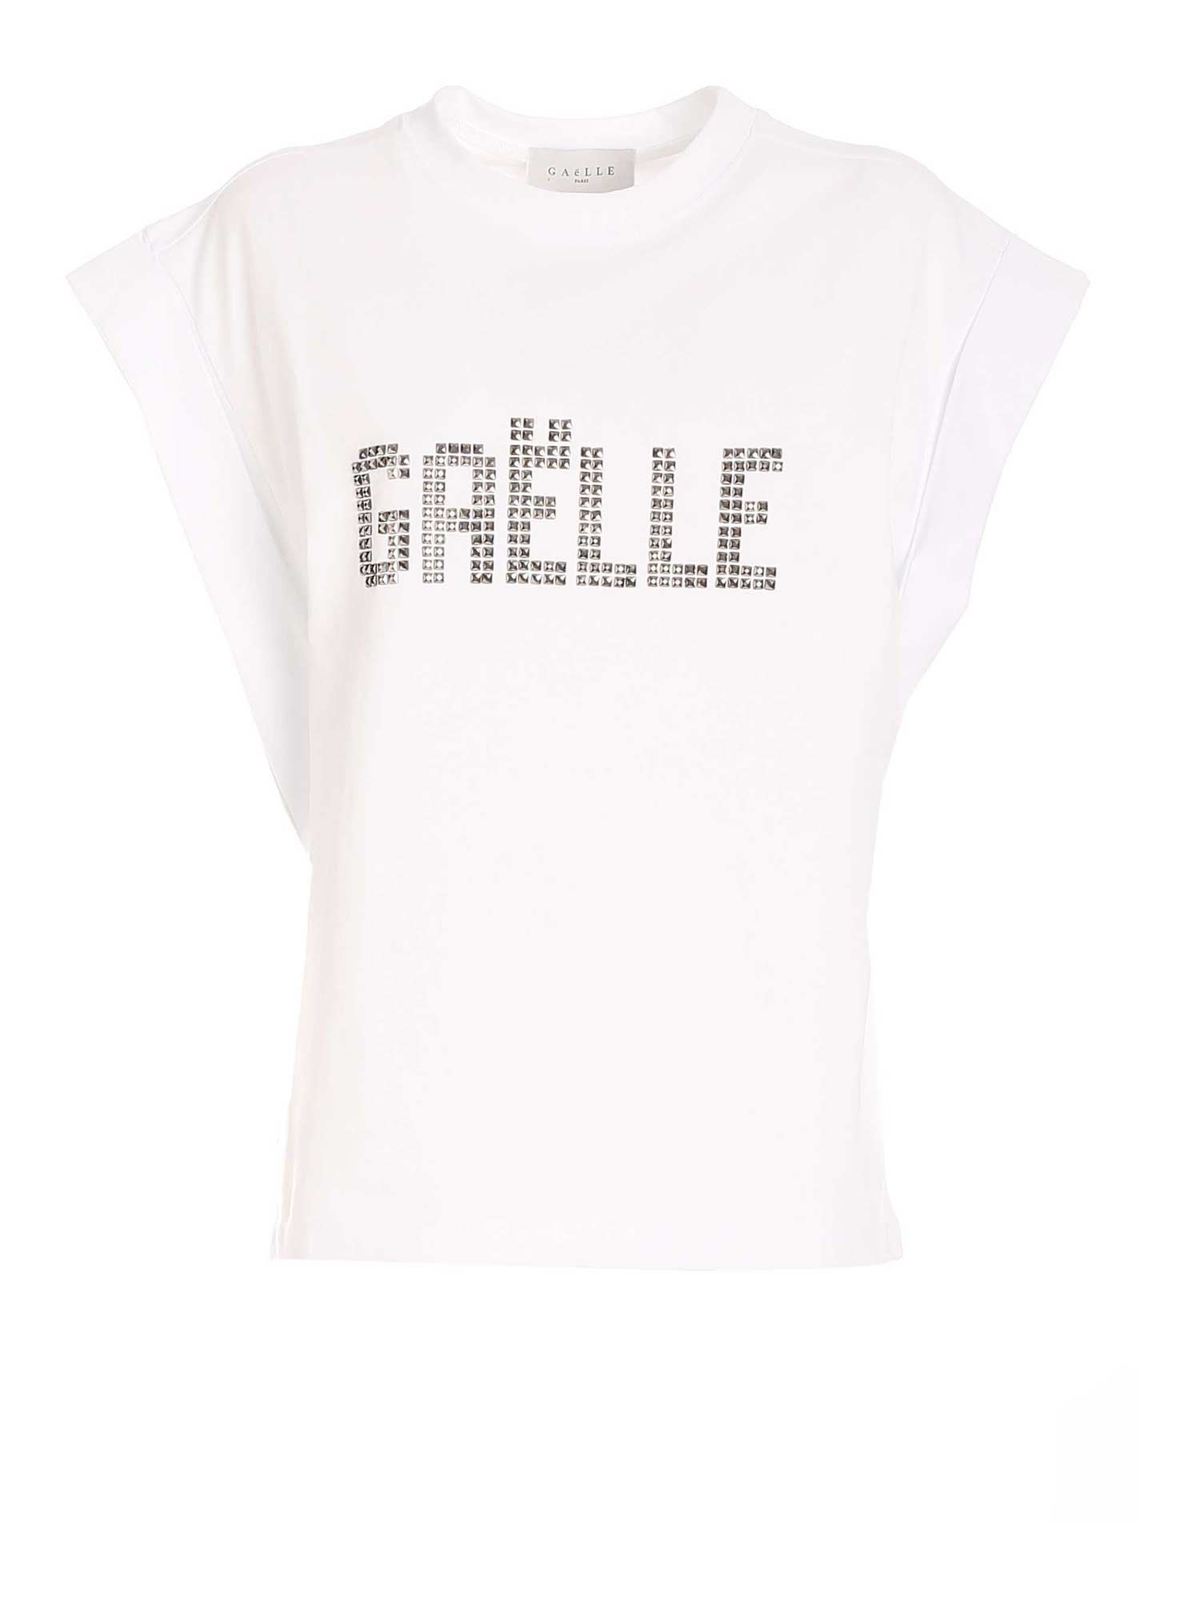 GAELLE PARIS GAELLE OVERSIZED T-SHIRT IN WHITE